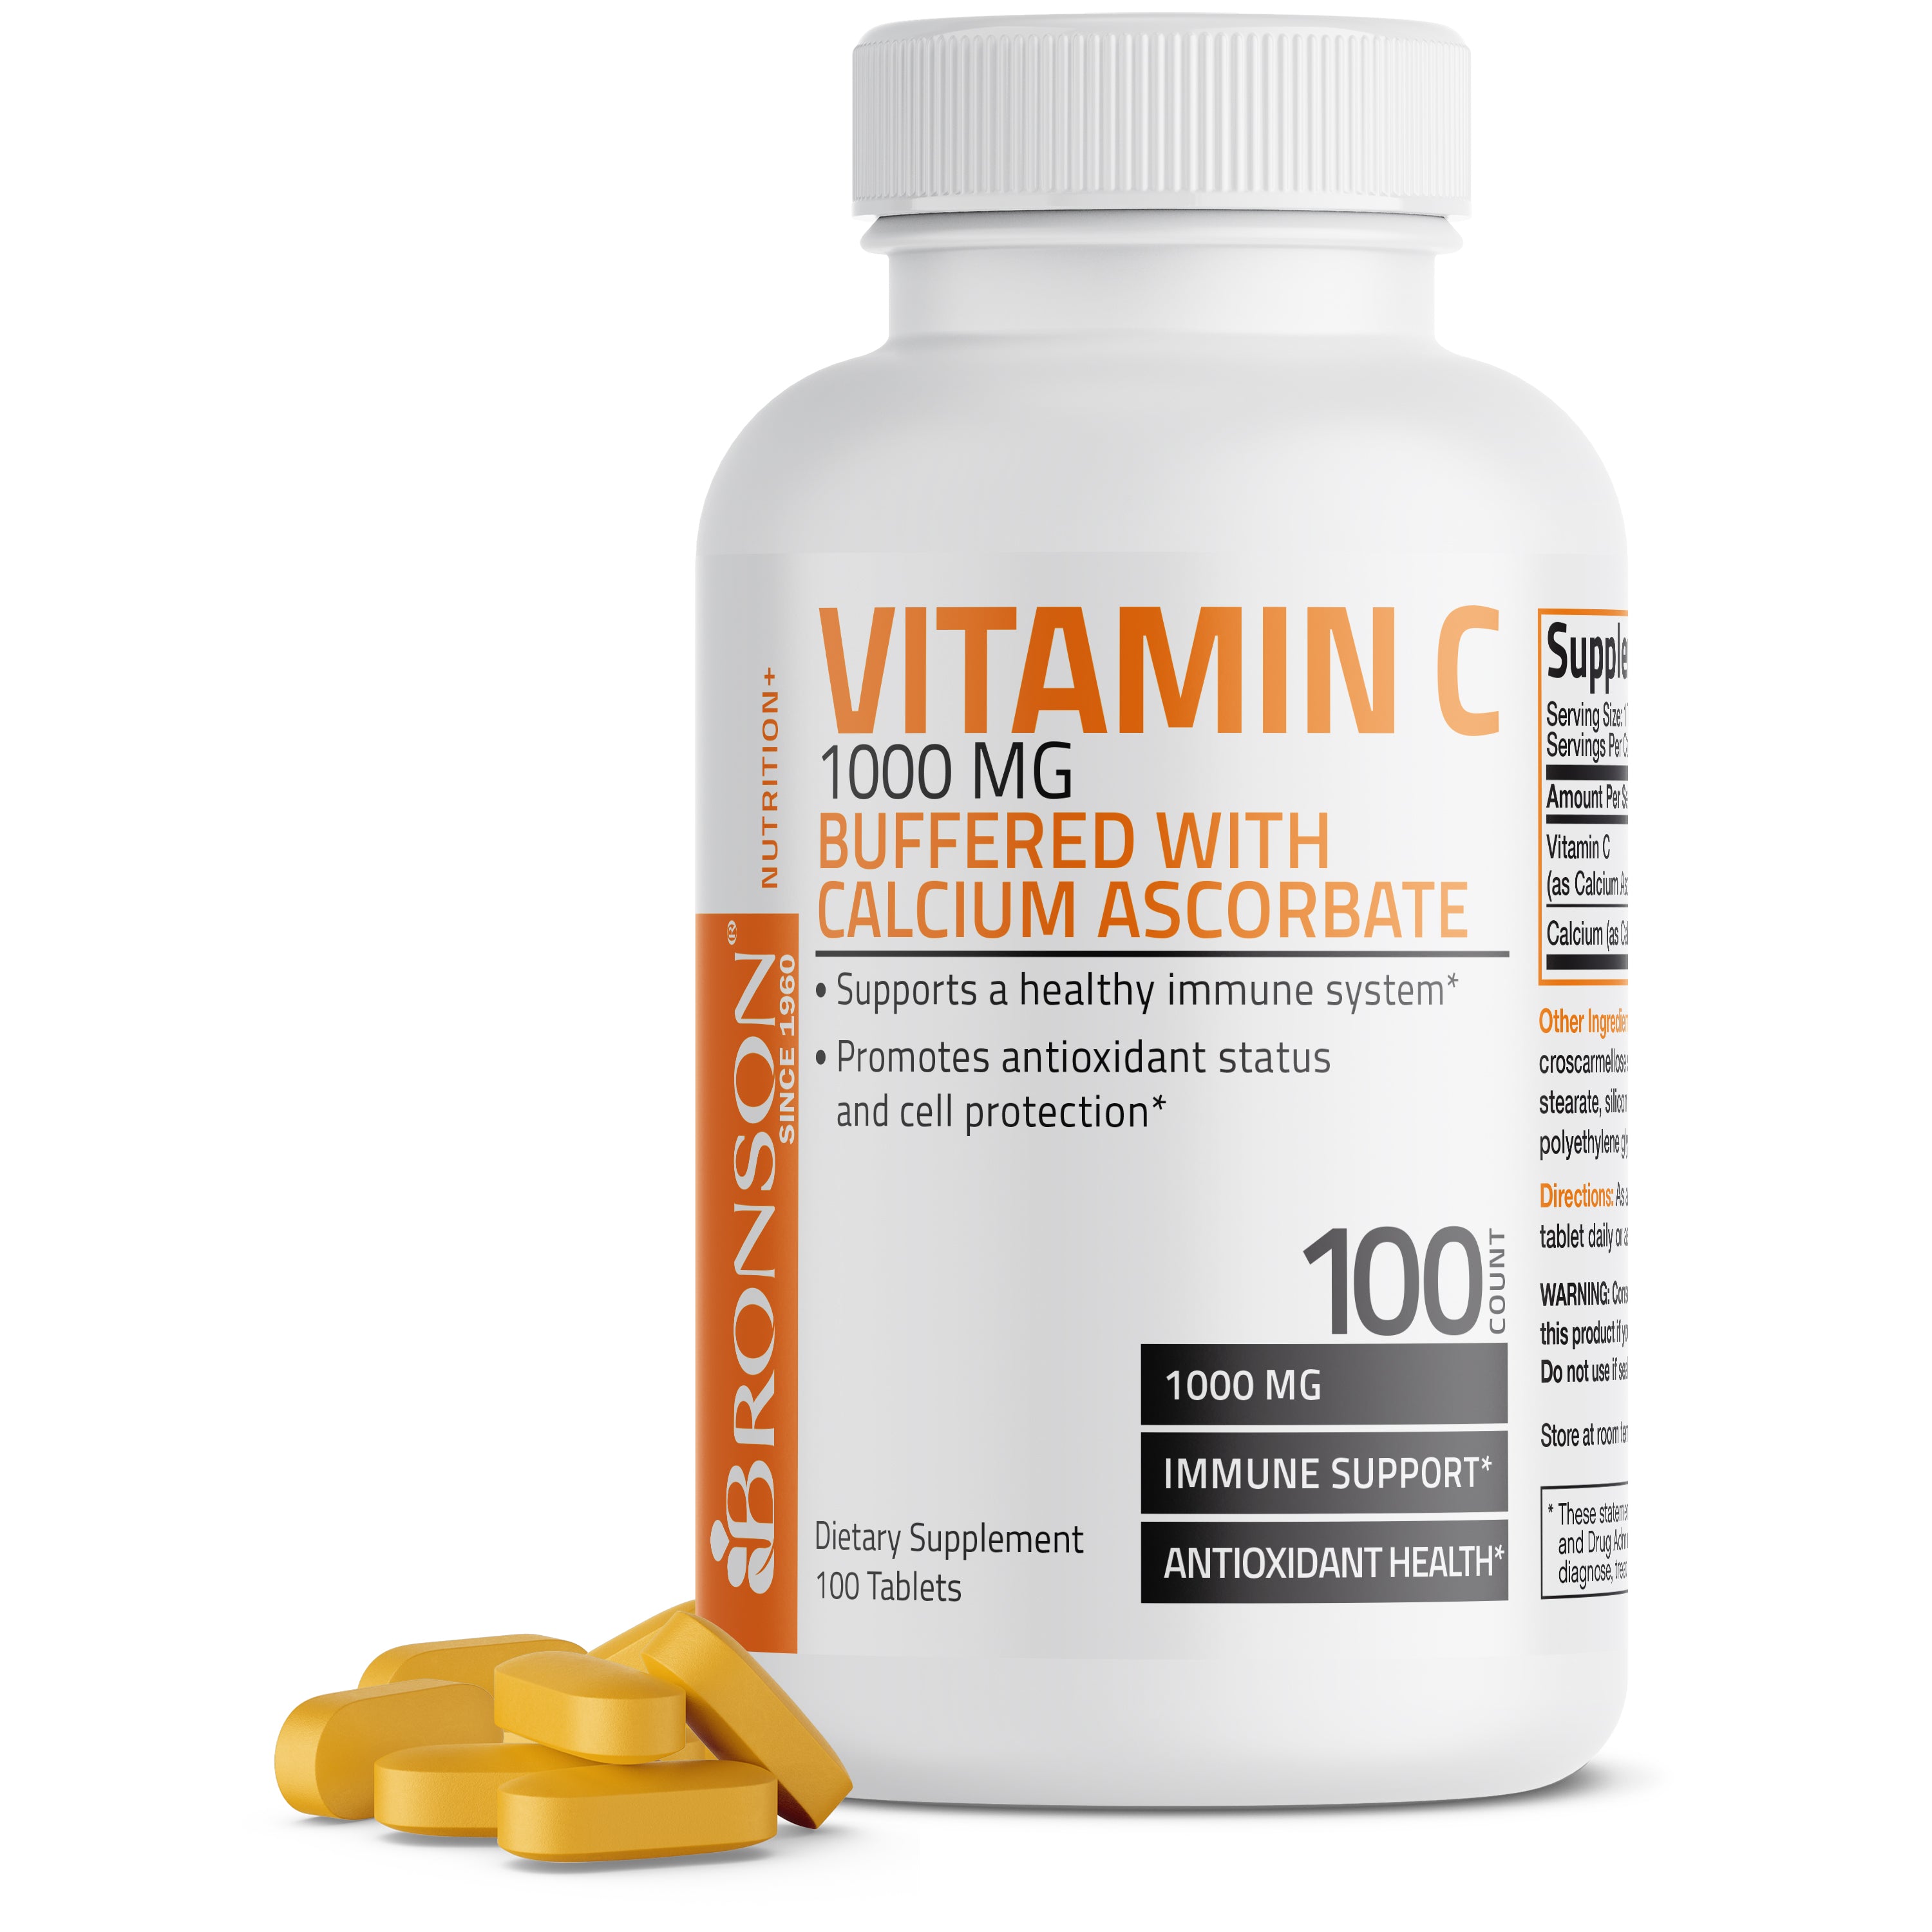 Buffered Vitamin C Calcium Ascorbate - 1,000 mg view 1 of 6